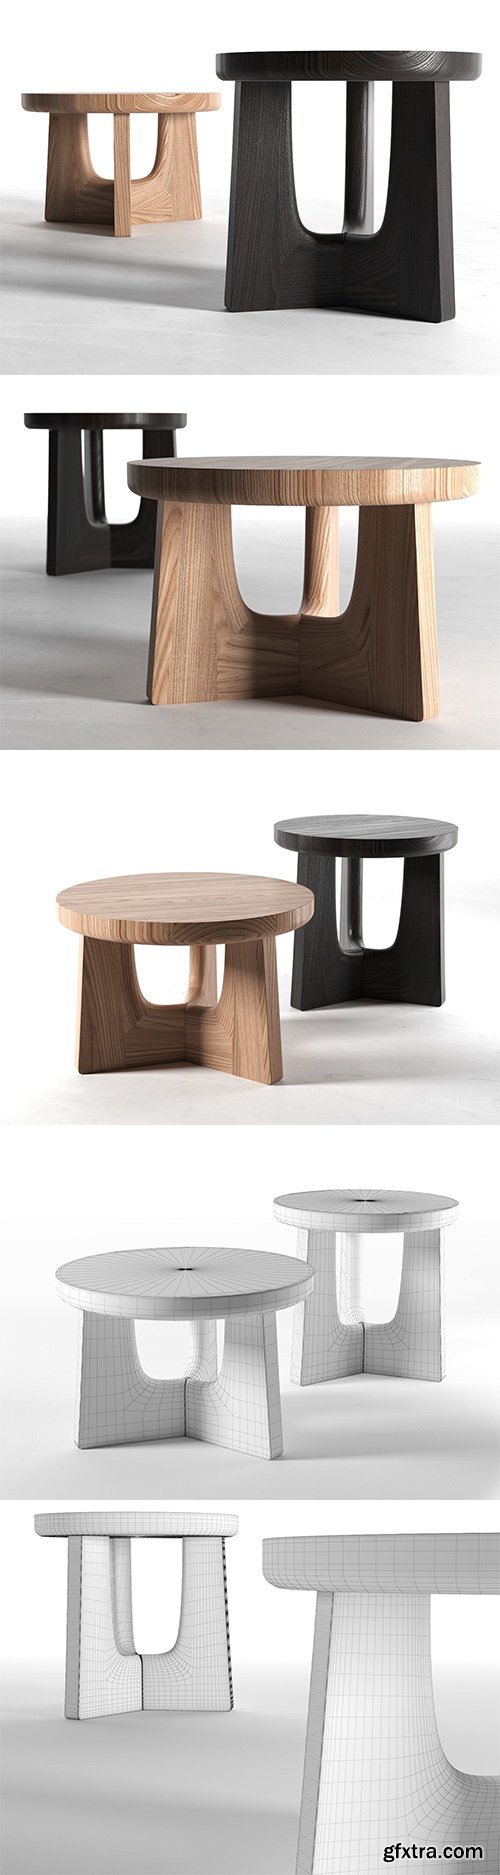 Cgtrader - Nara Coffee Table 3D model